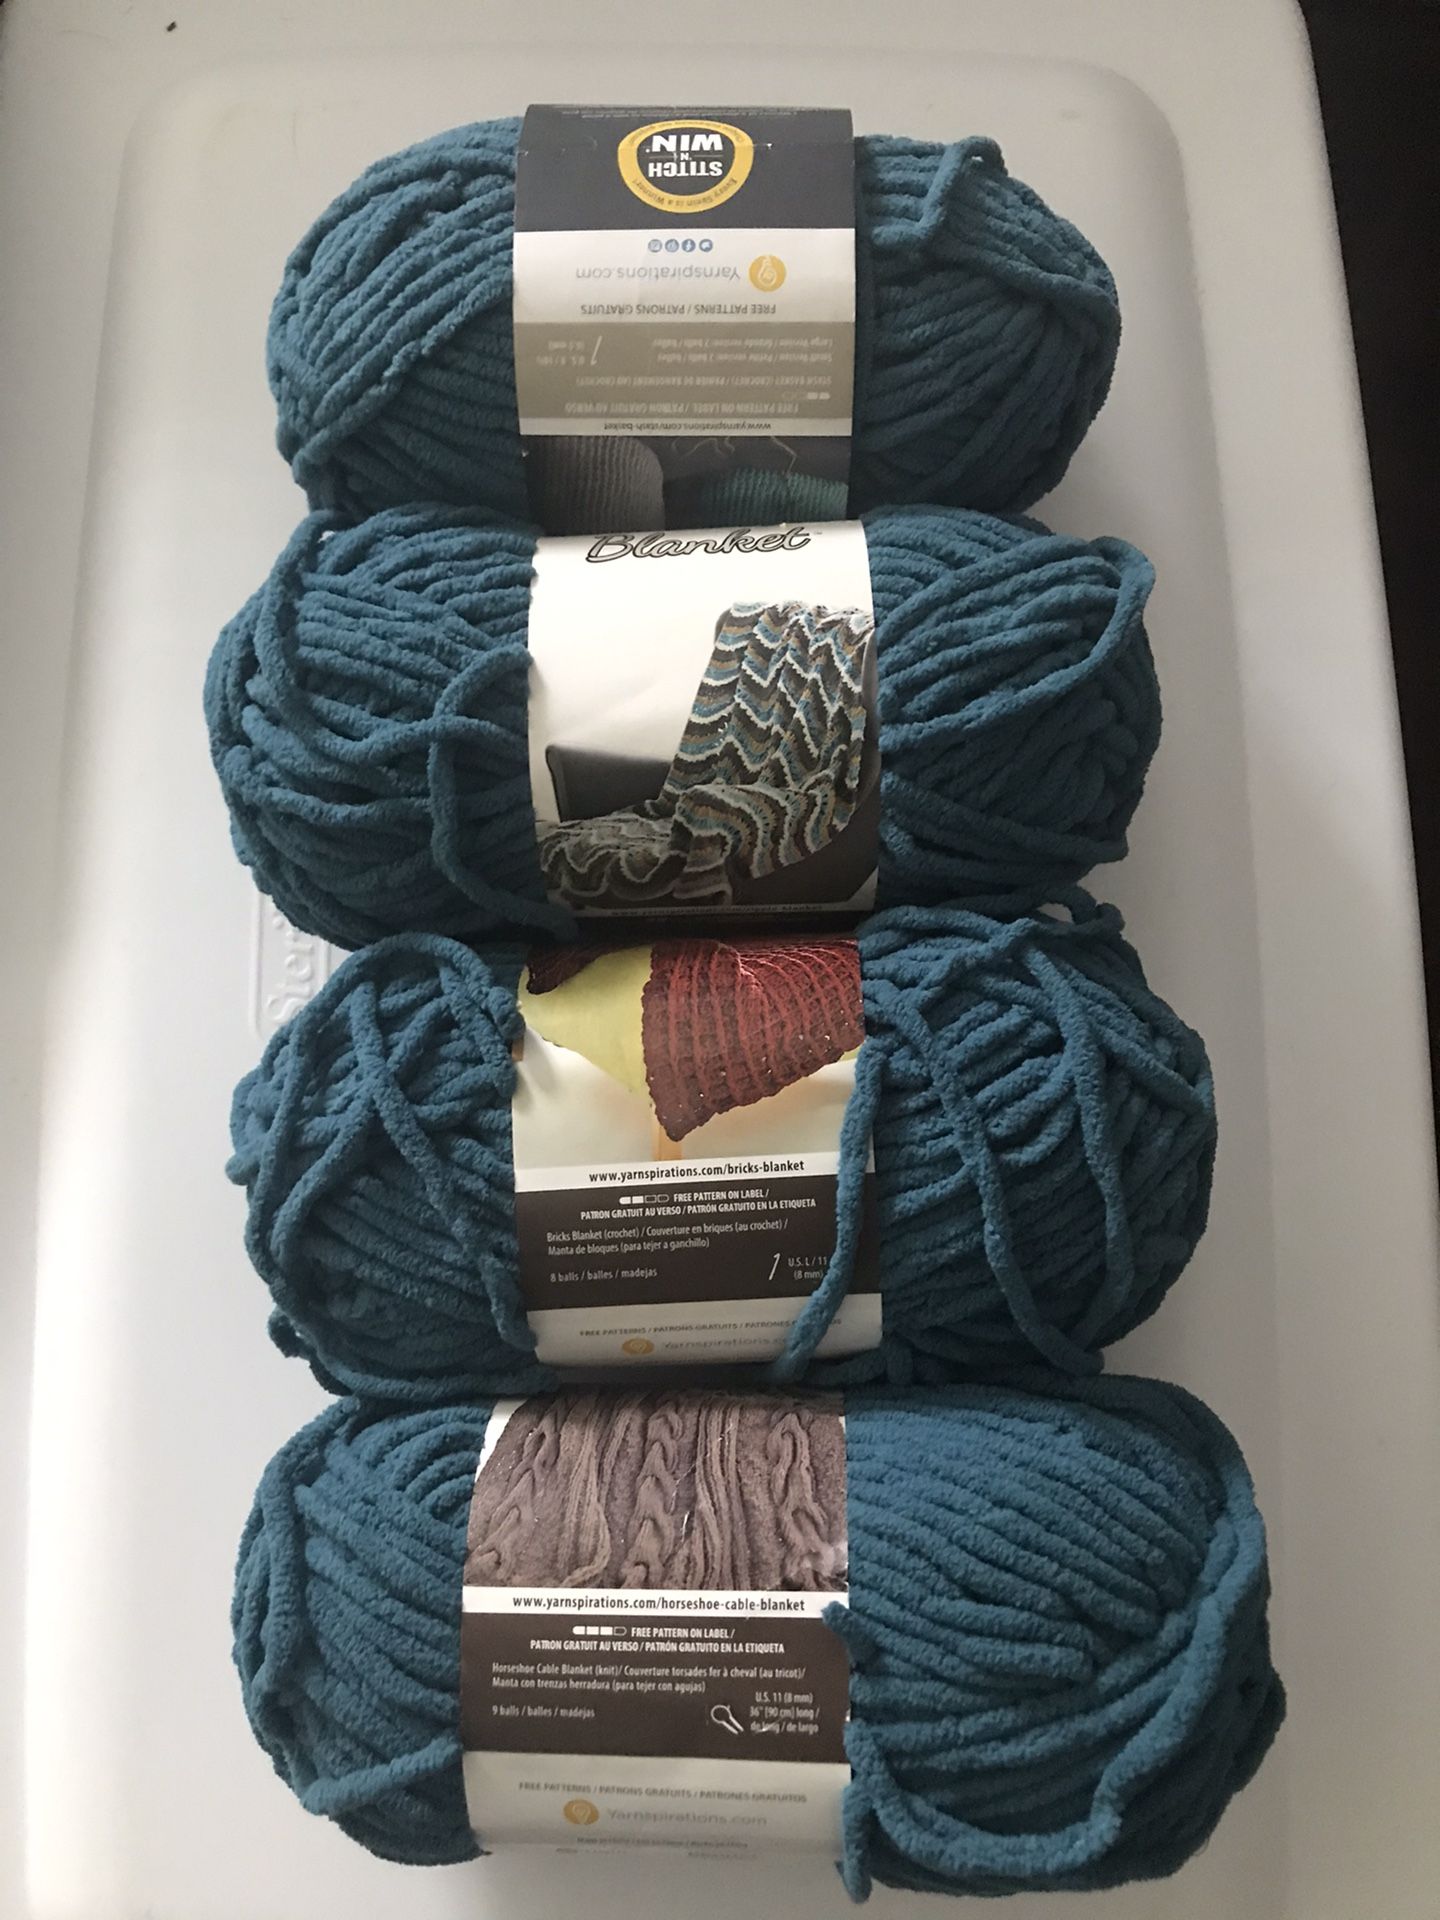 Teal Bernat yarn blanket knit or Crochet